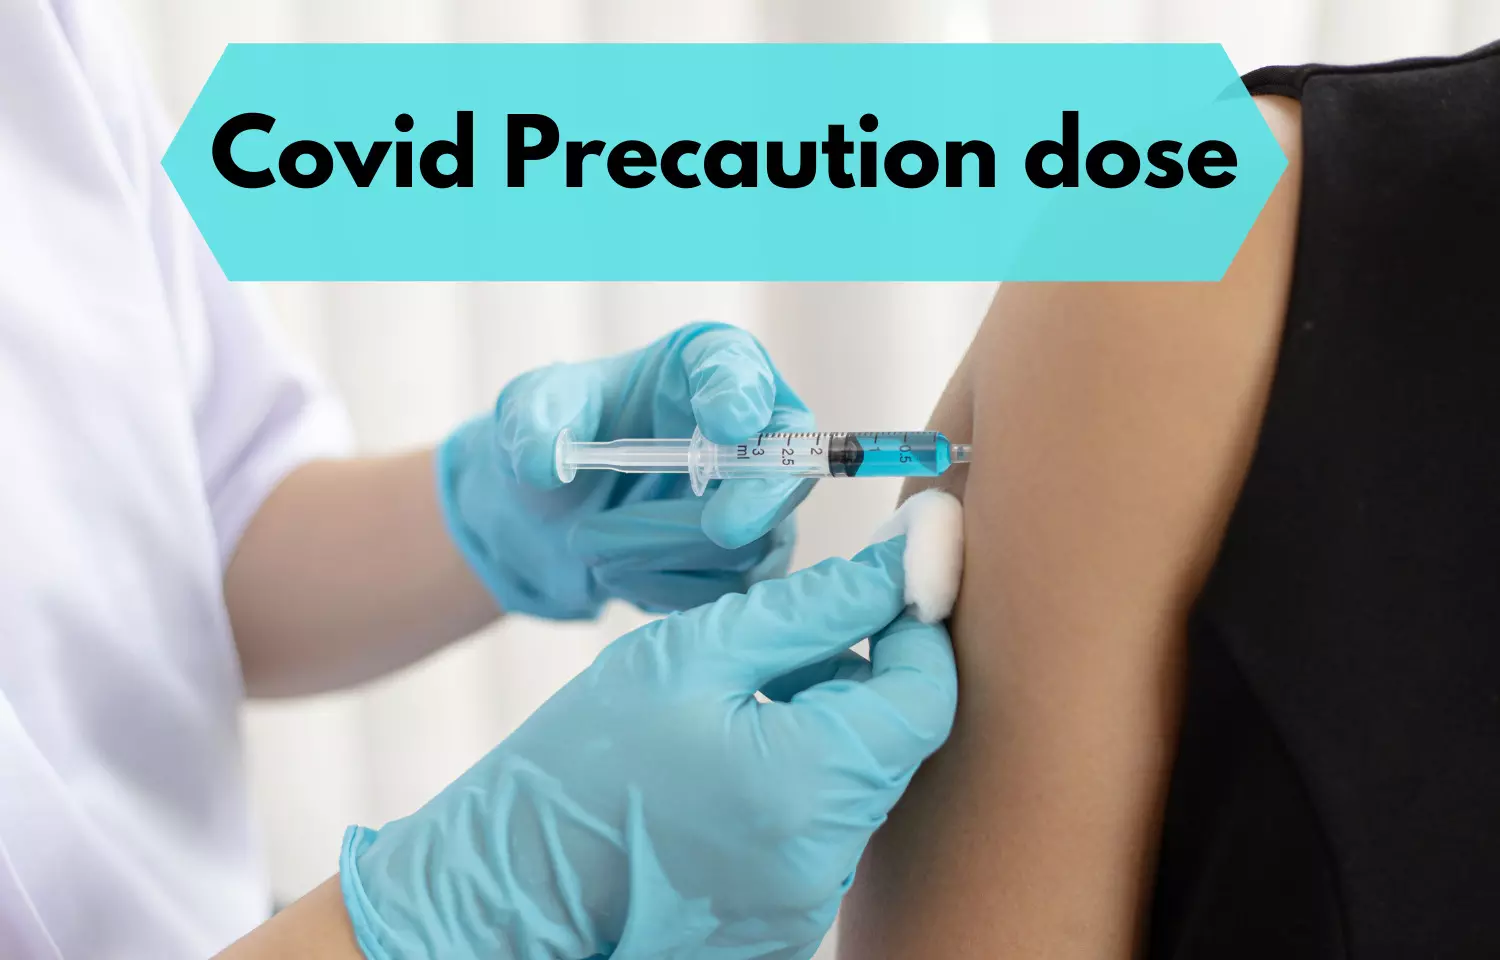 Delhi Govt Hospitals to provide free booster doses of COVID Vaccine